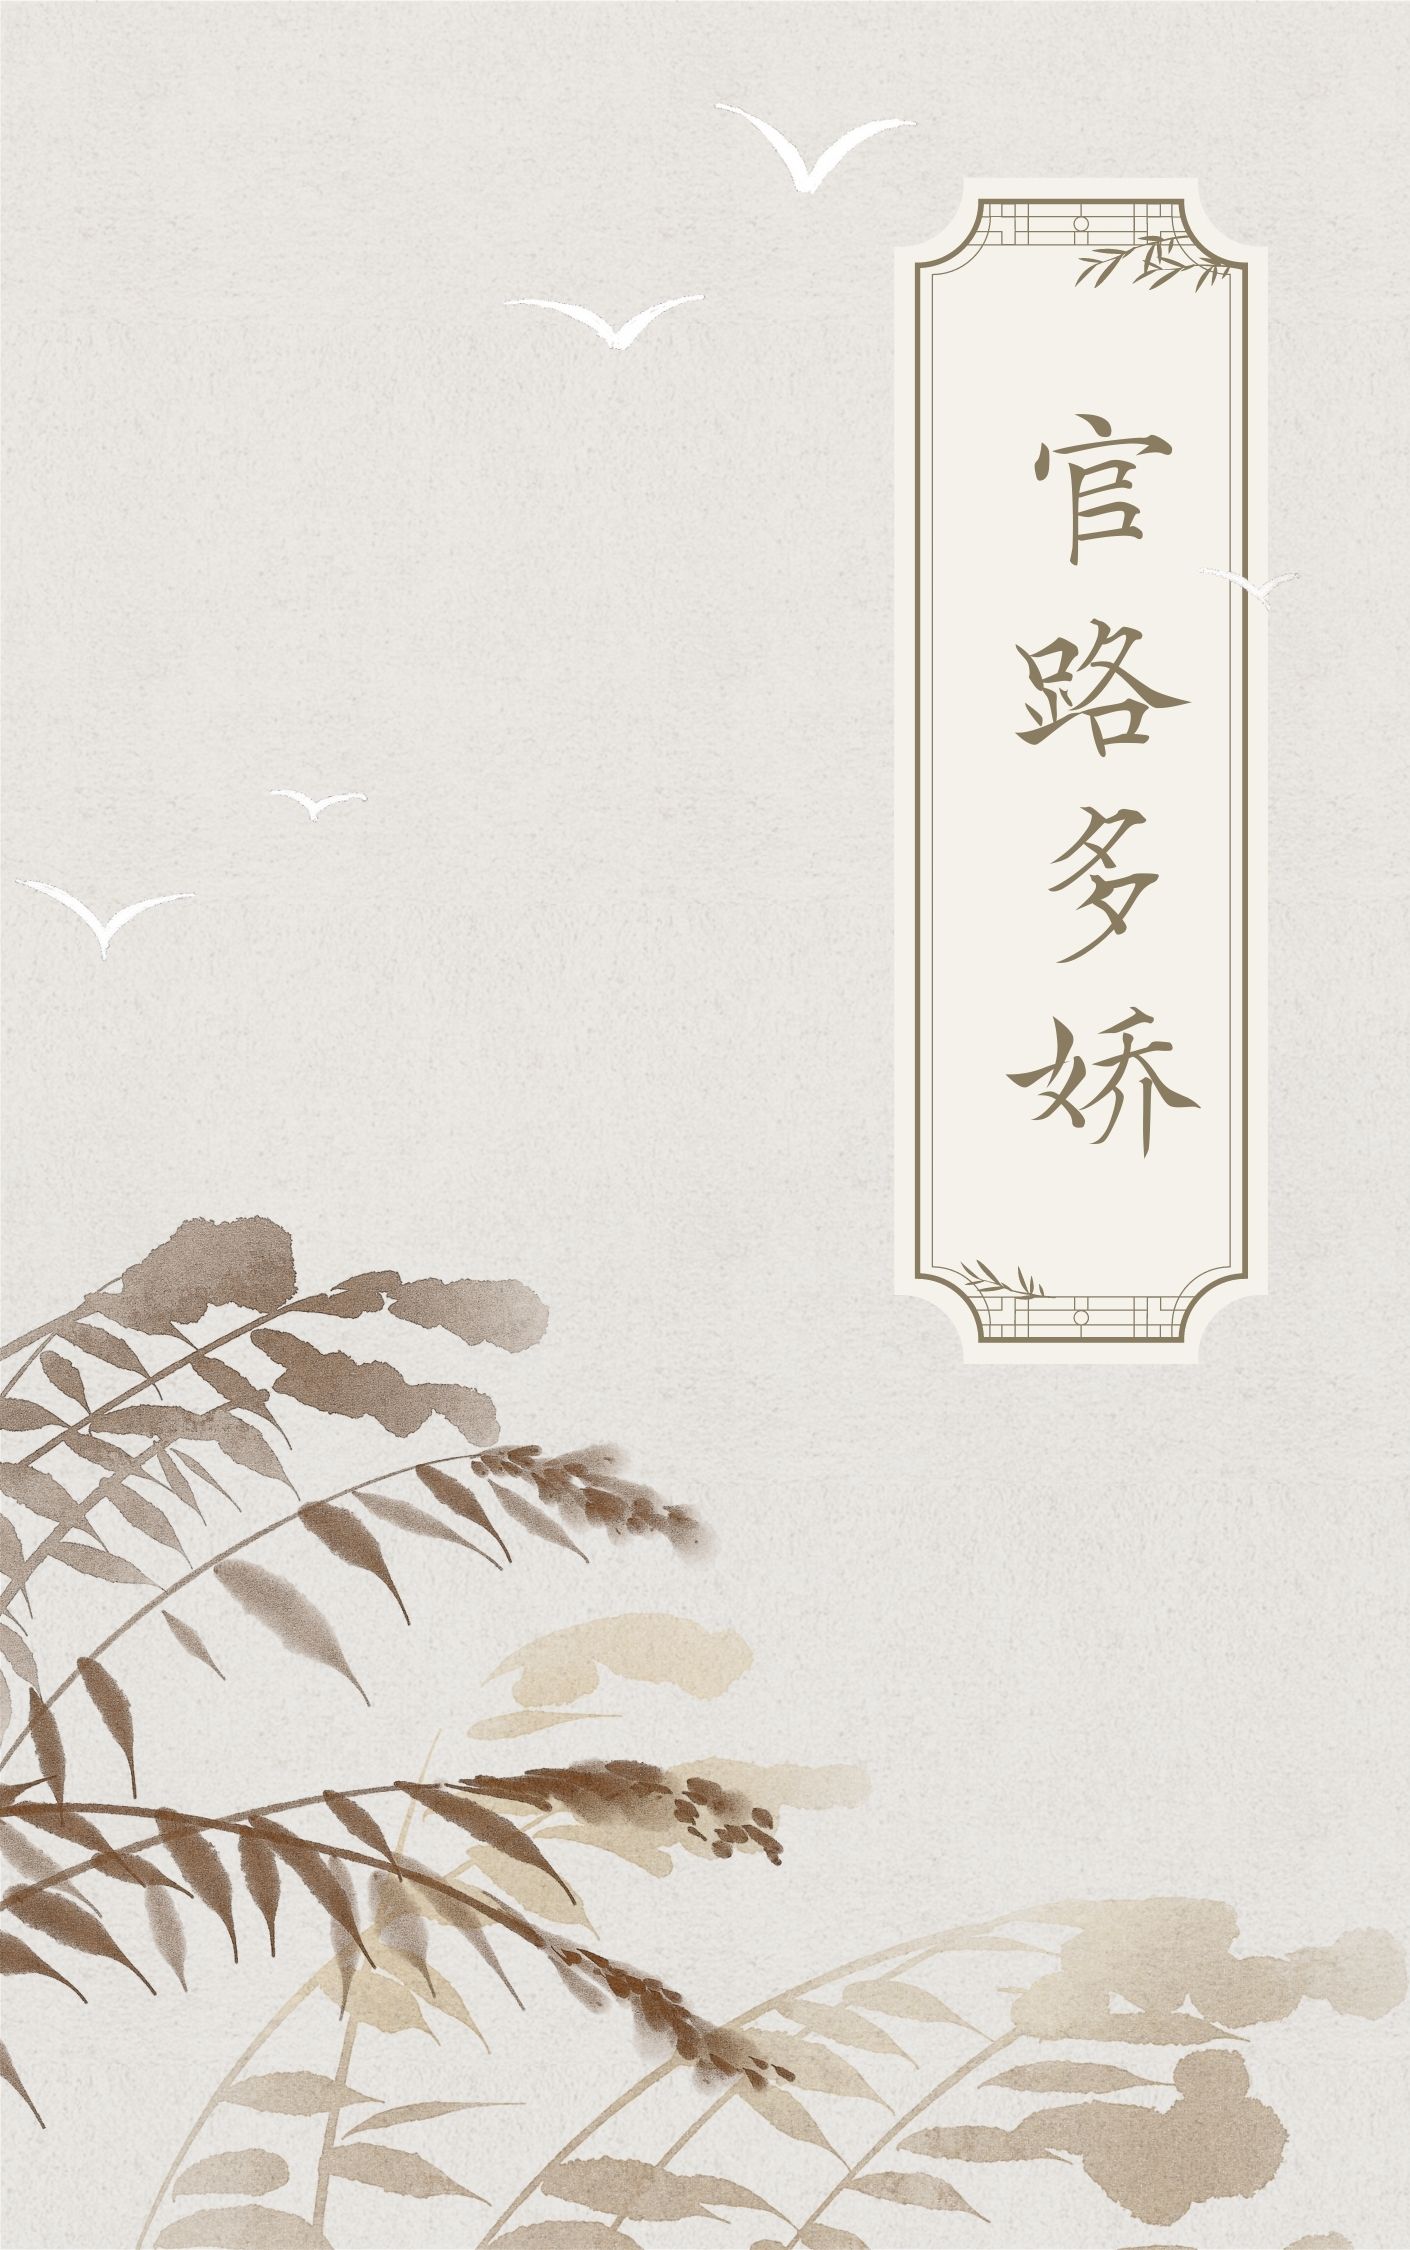 【热门】《陈志远林之雅小说》_官路多娇小说全文免费阅读已完结